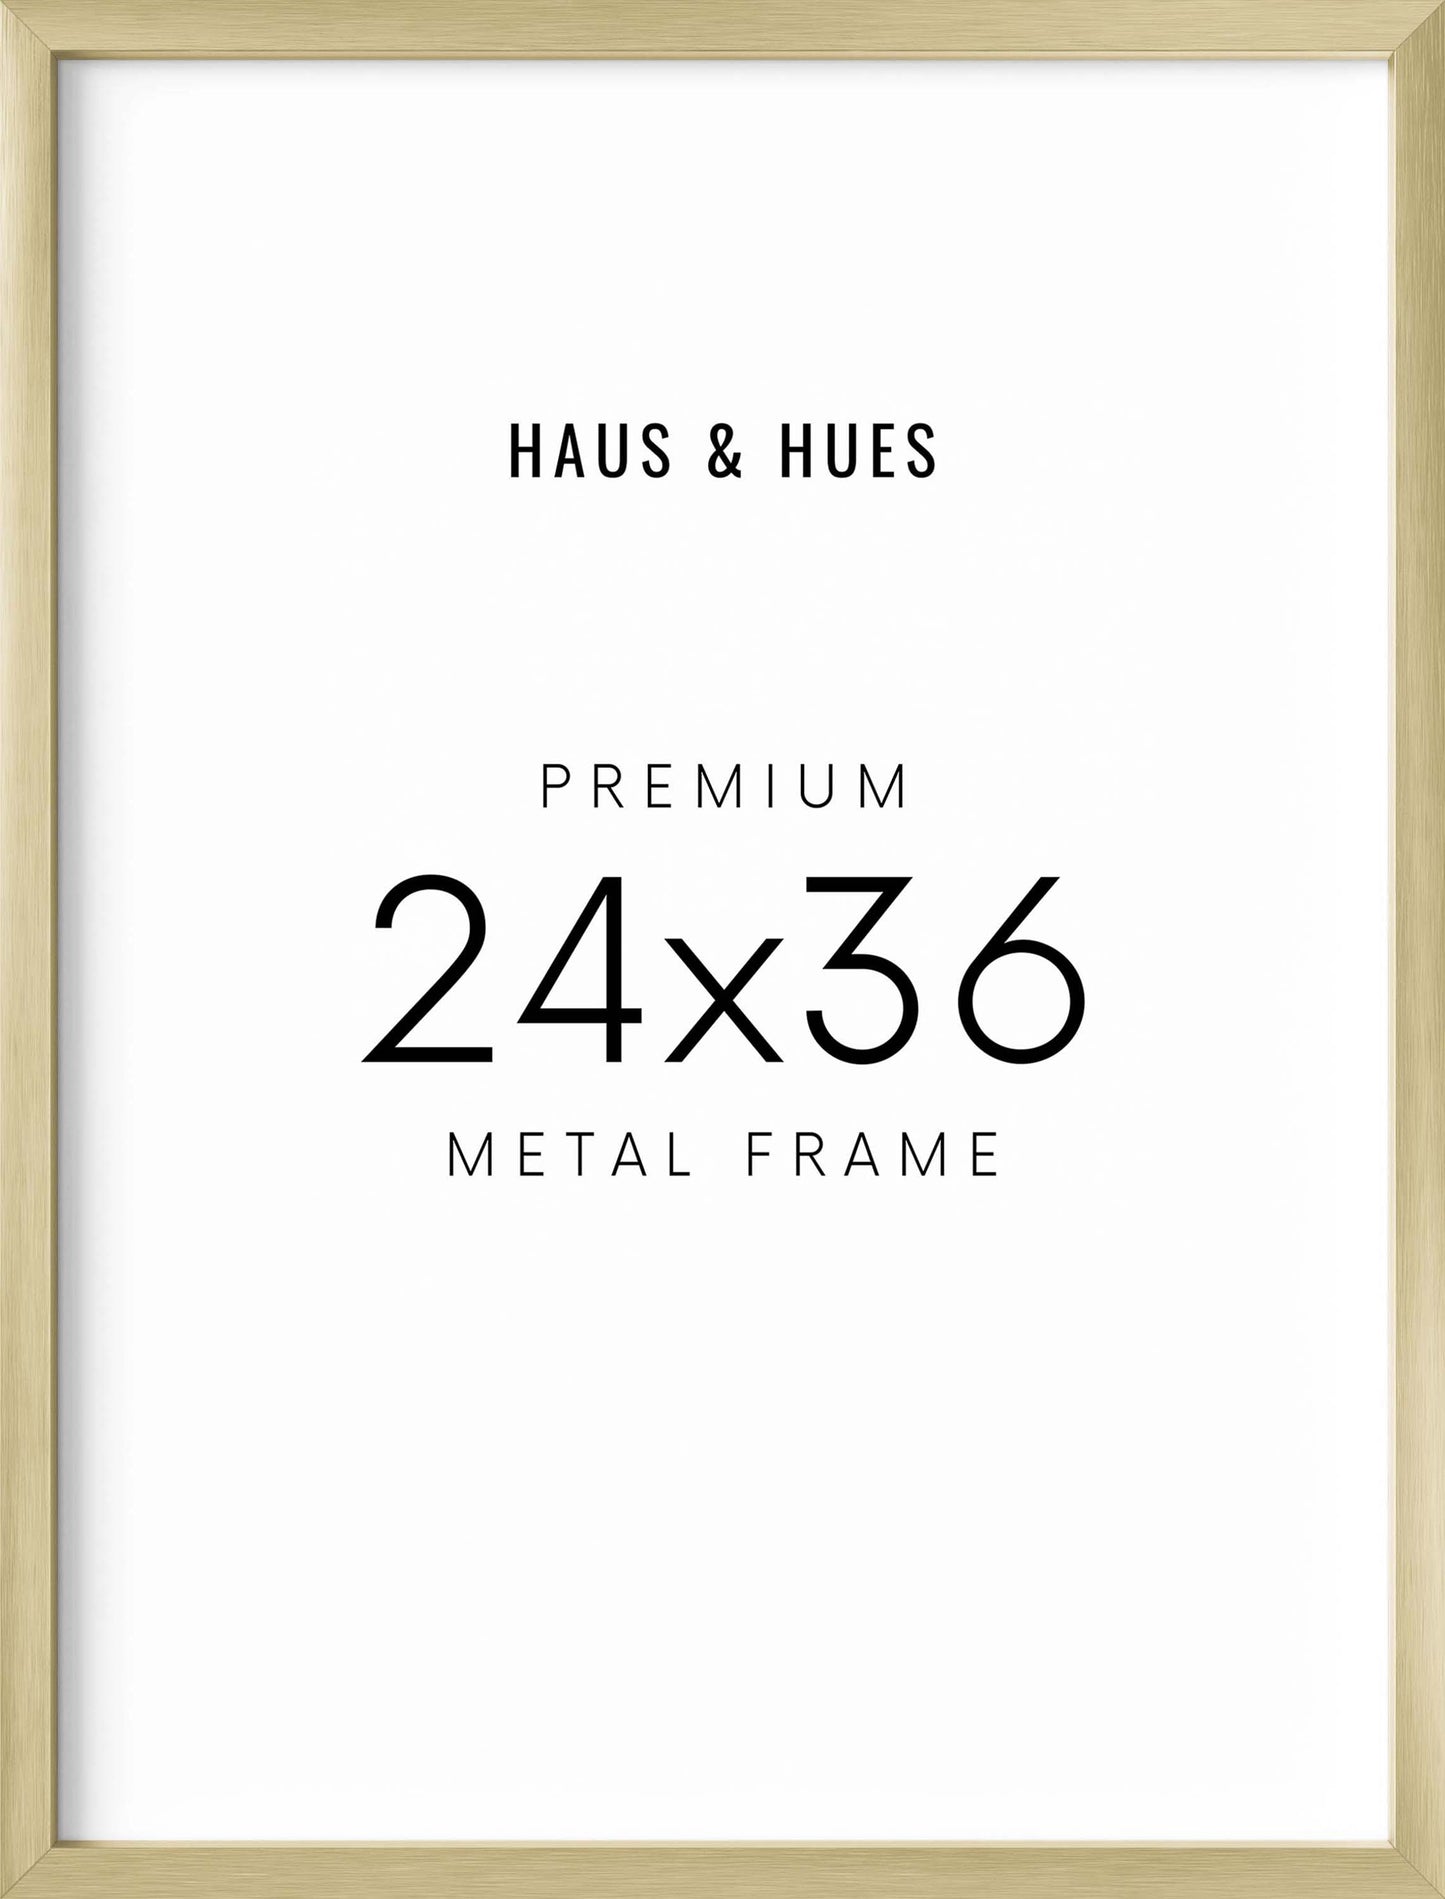 24x36 in, Set of 4, Gold Aluminum